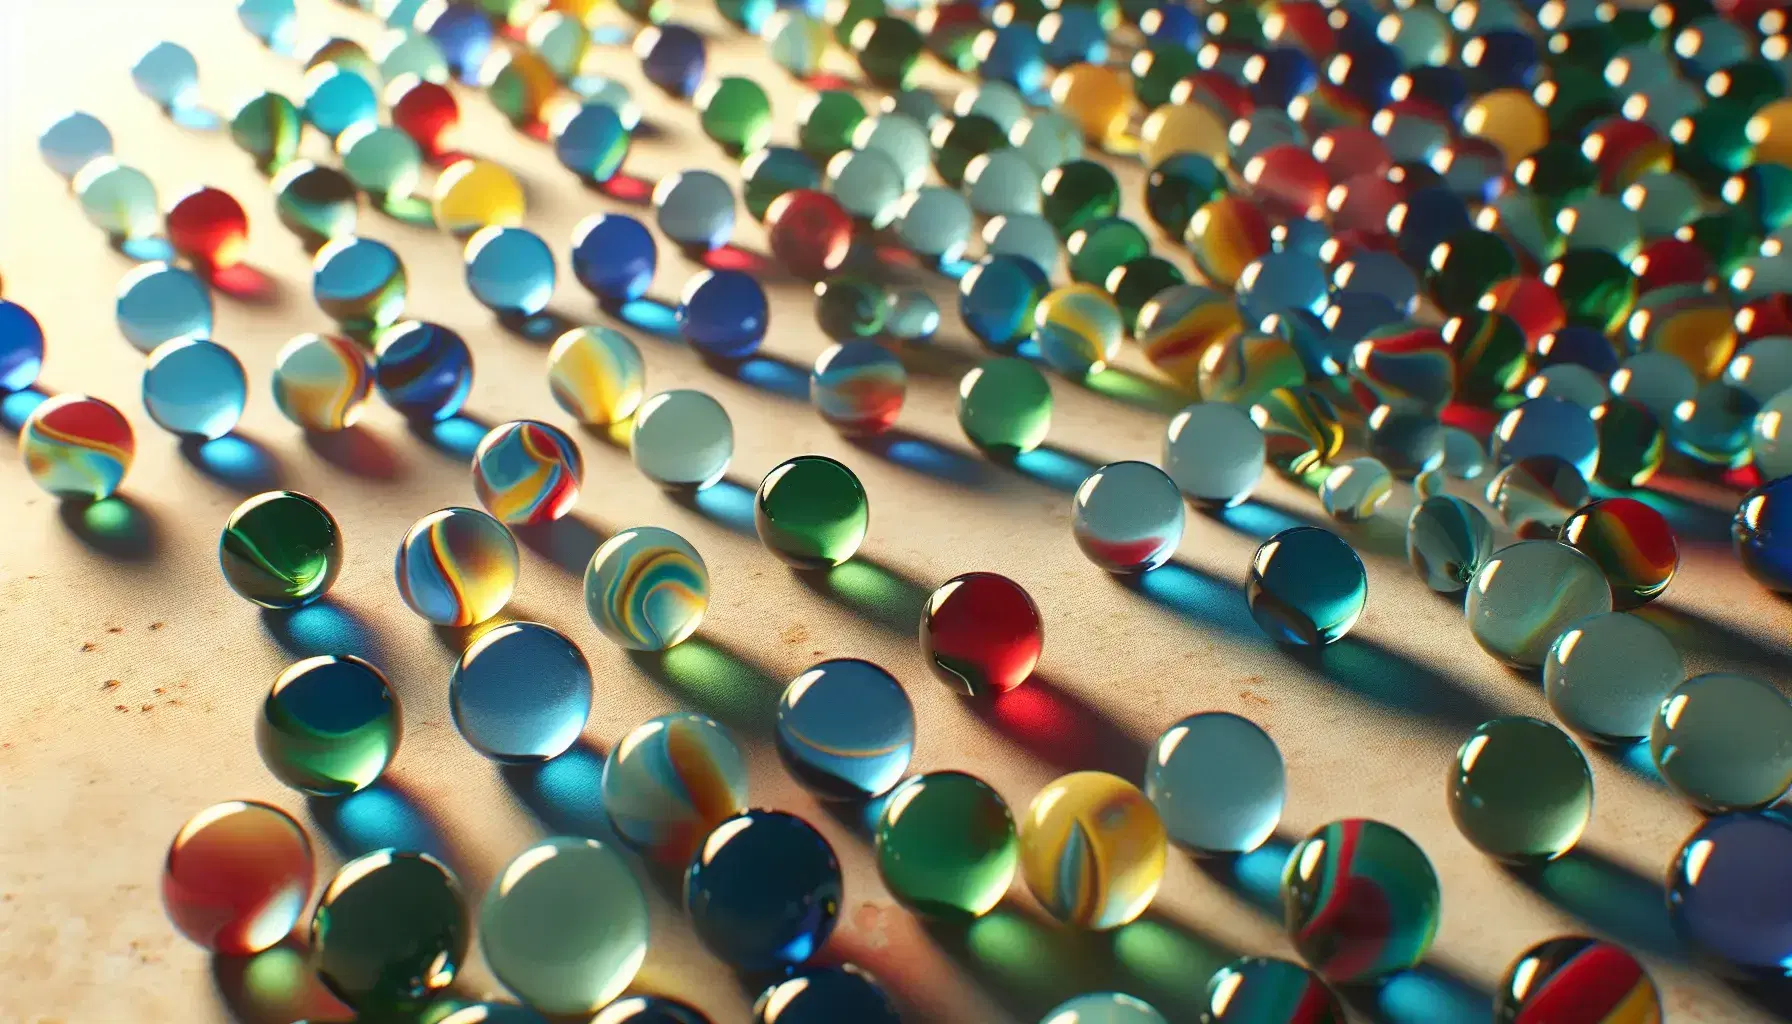 Colección de canicas de vidrio multicolores dispersas sobre superficie clara, reflejando luz y proyectando sombras suaves, vista desde arriba.